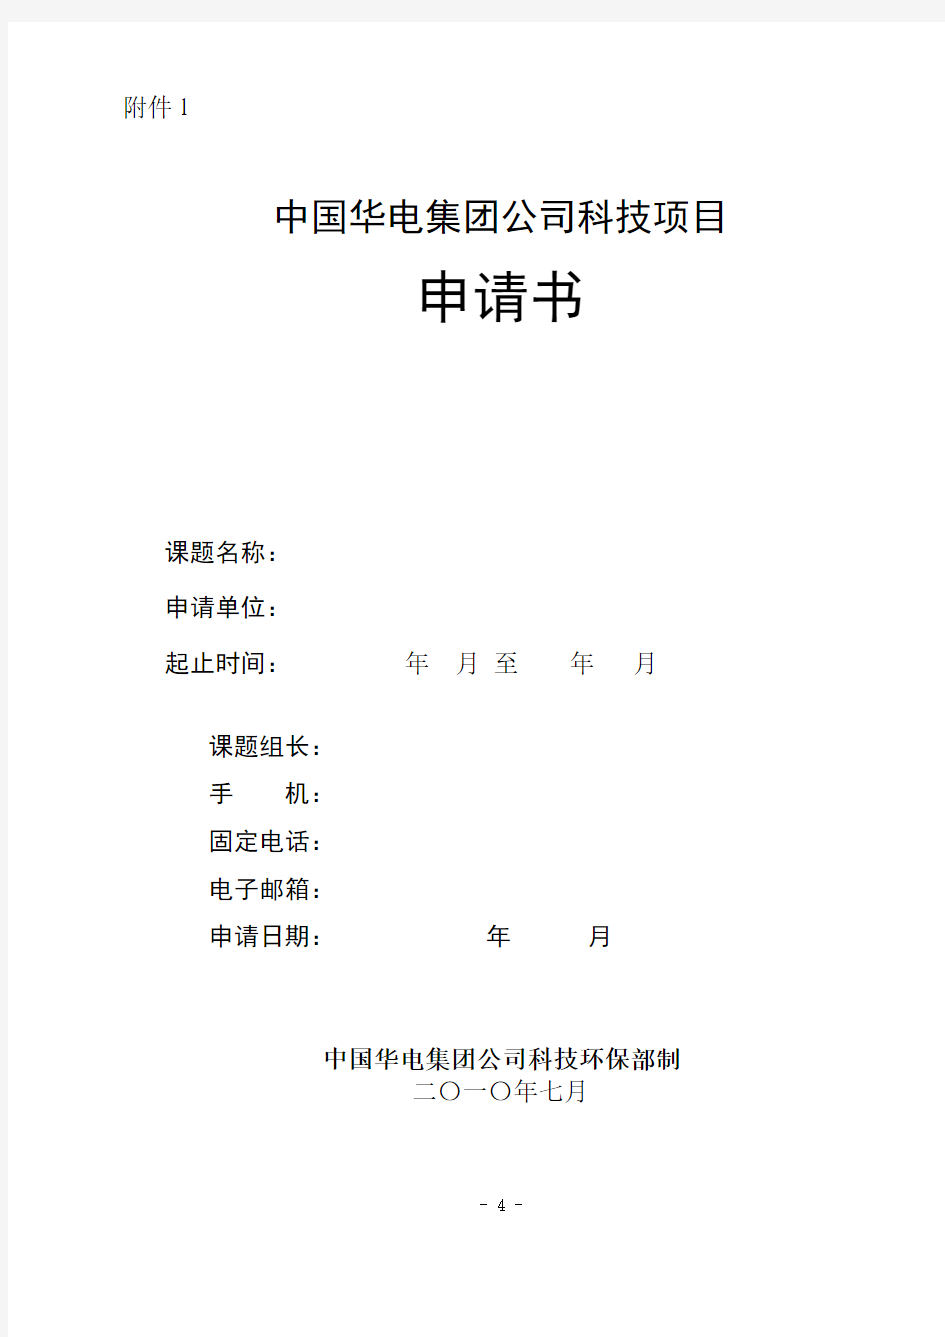 中国华电集团公司科技项目申请书